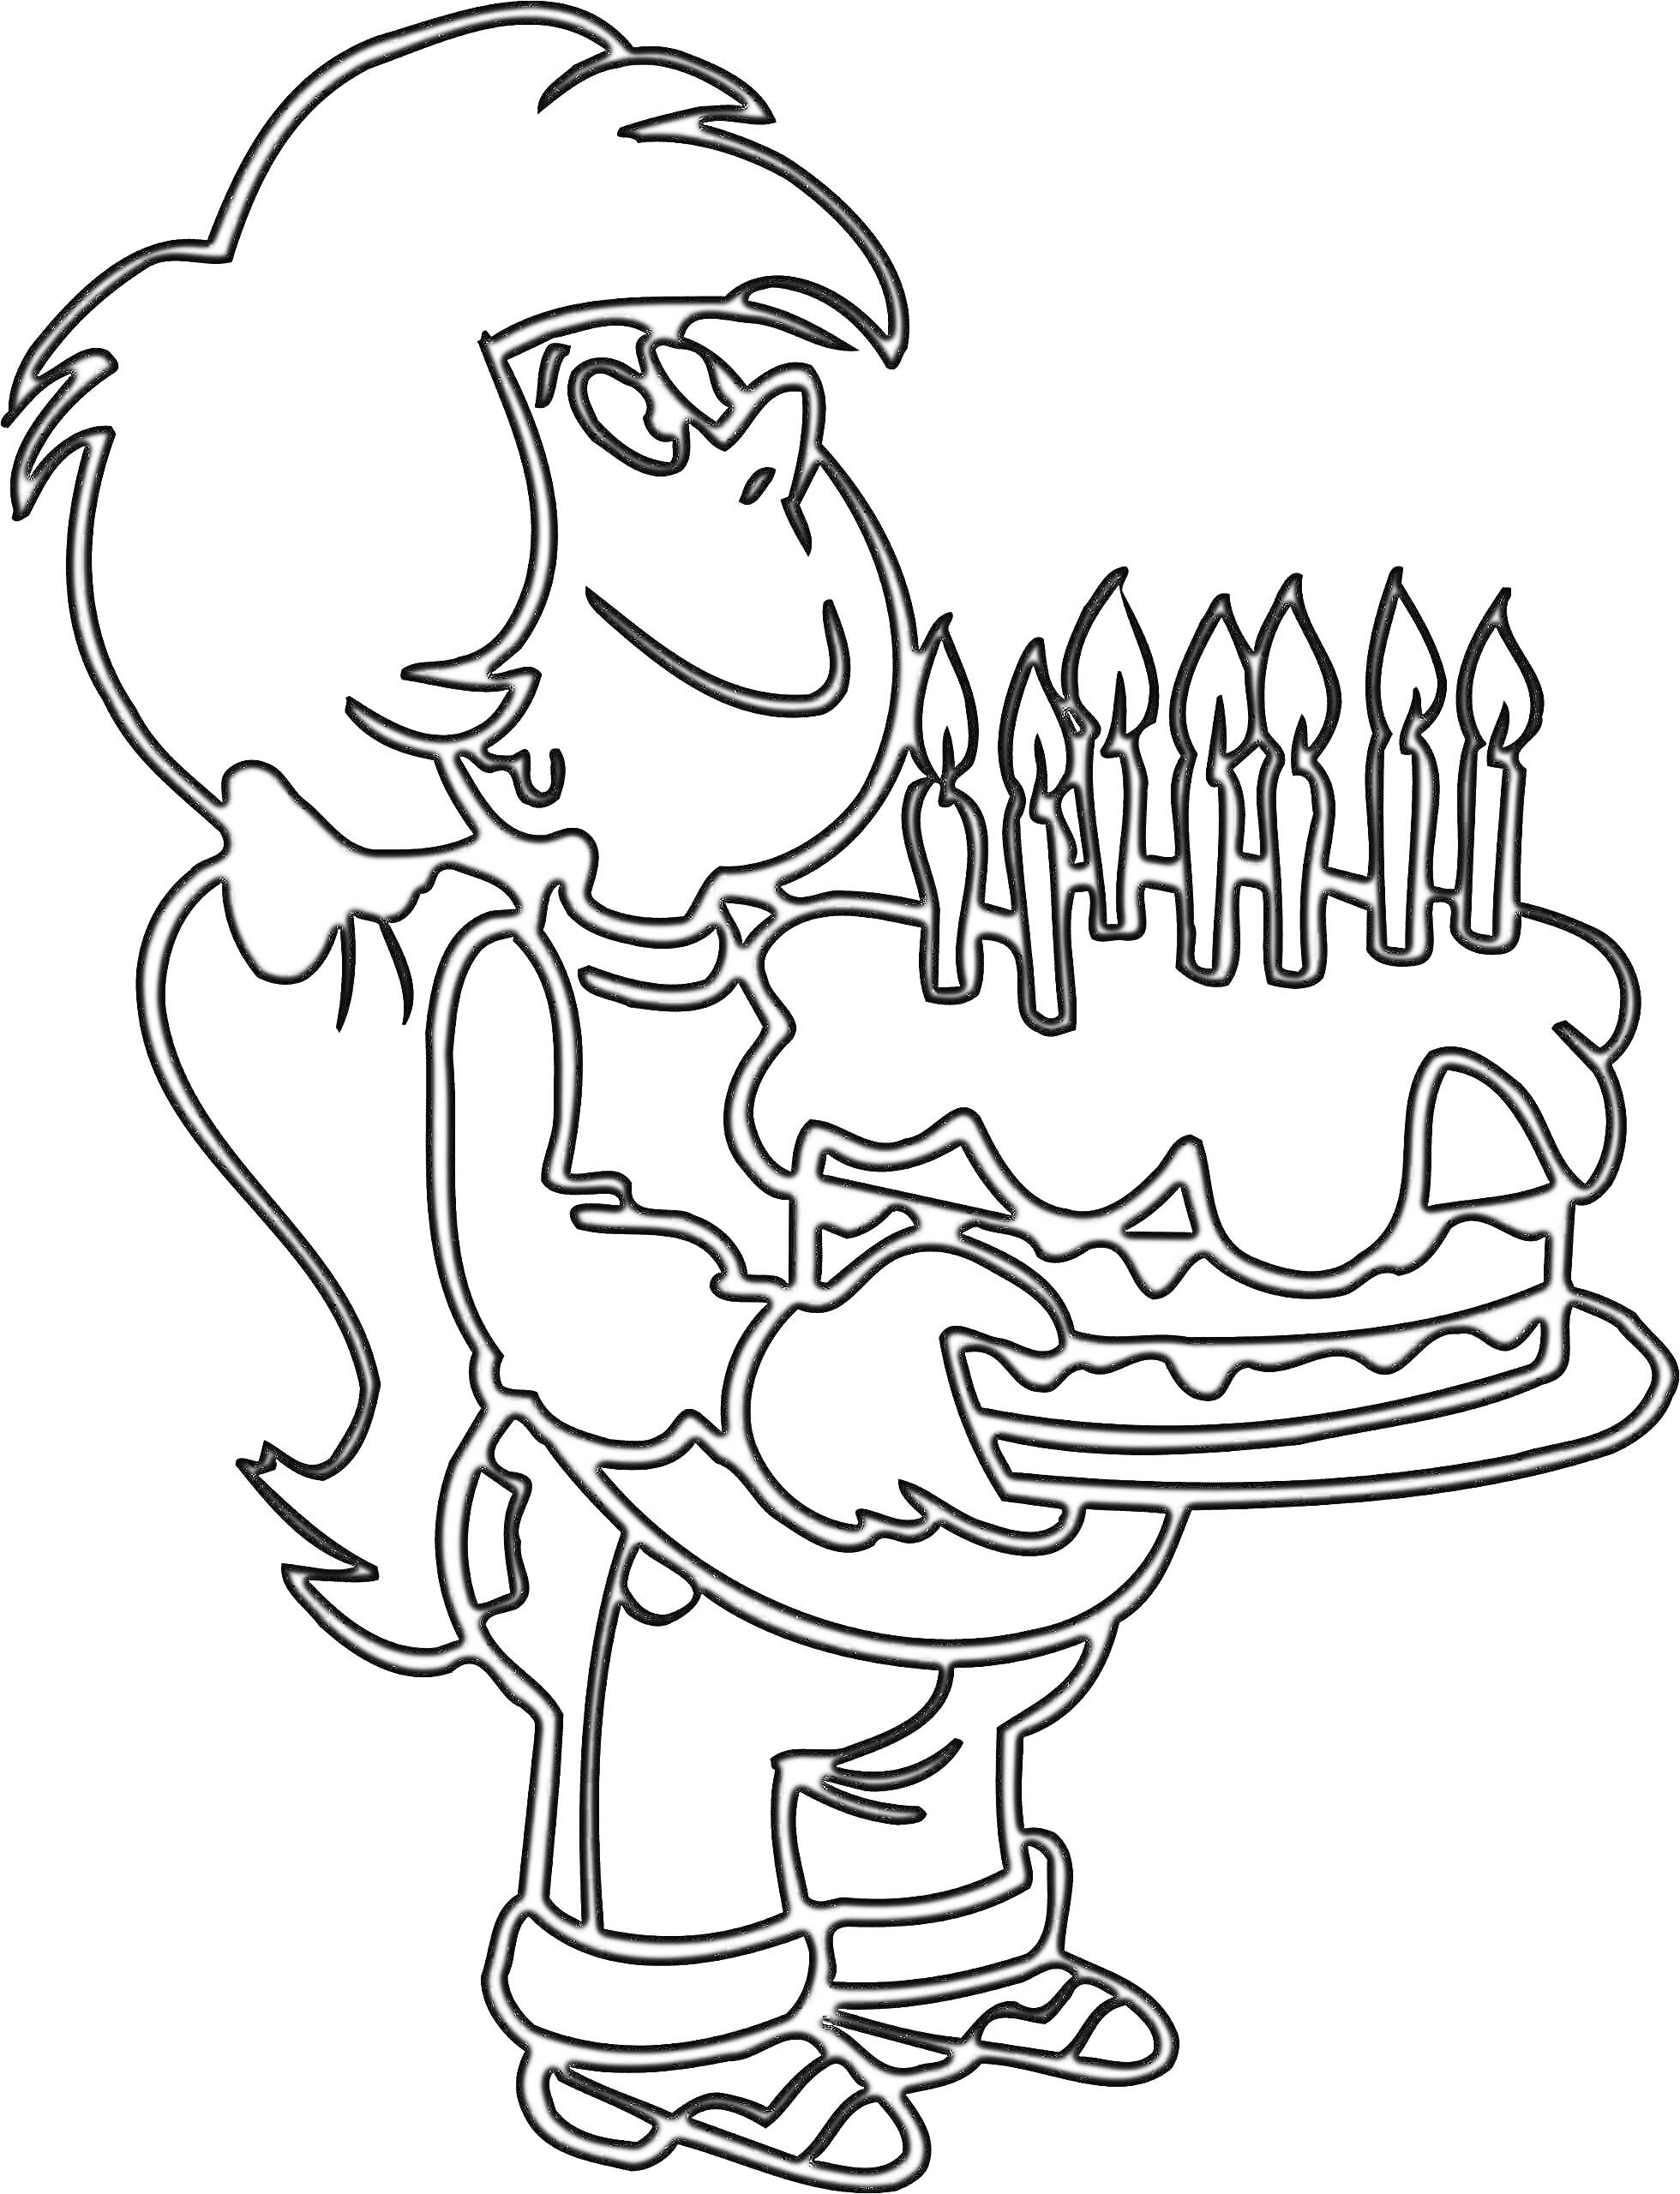 Девочка с длинными волосами и бантом держит праздничный торт с семью свечами